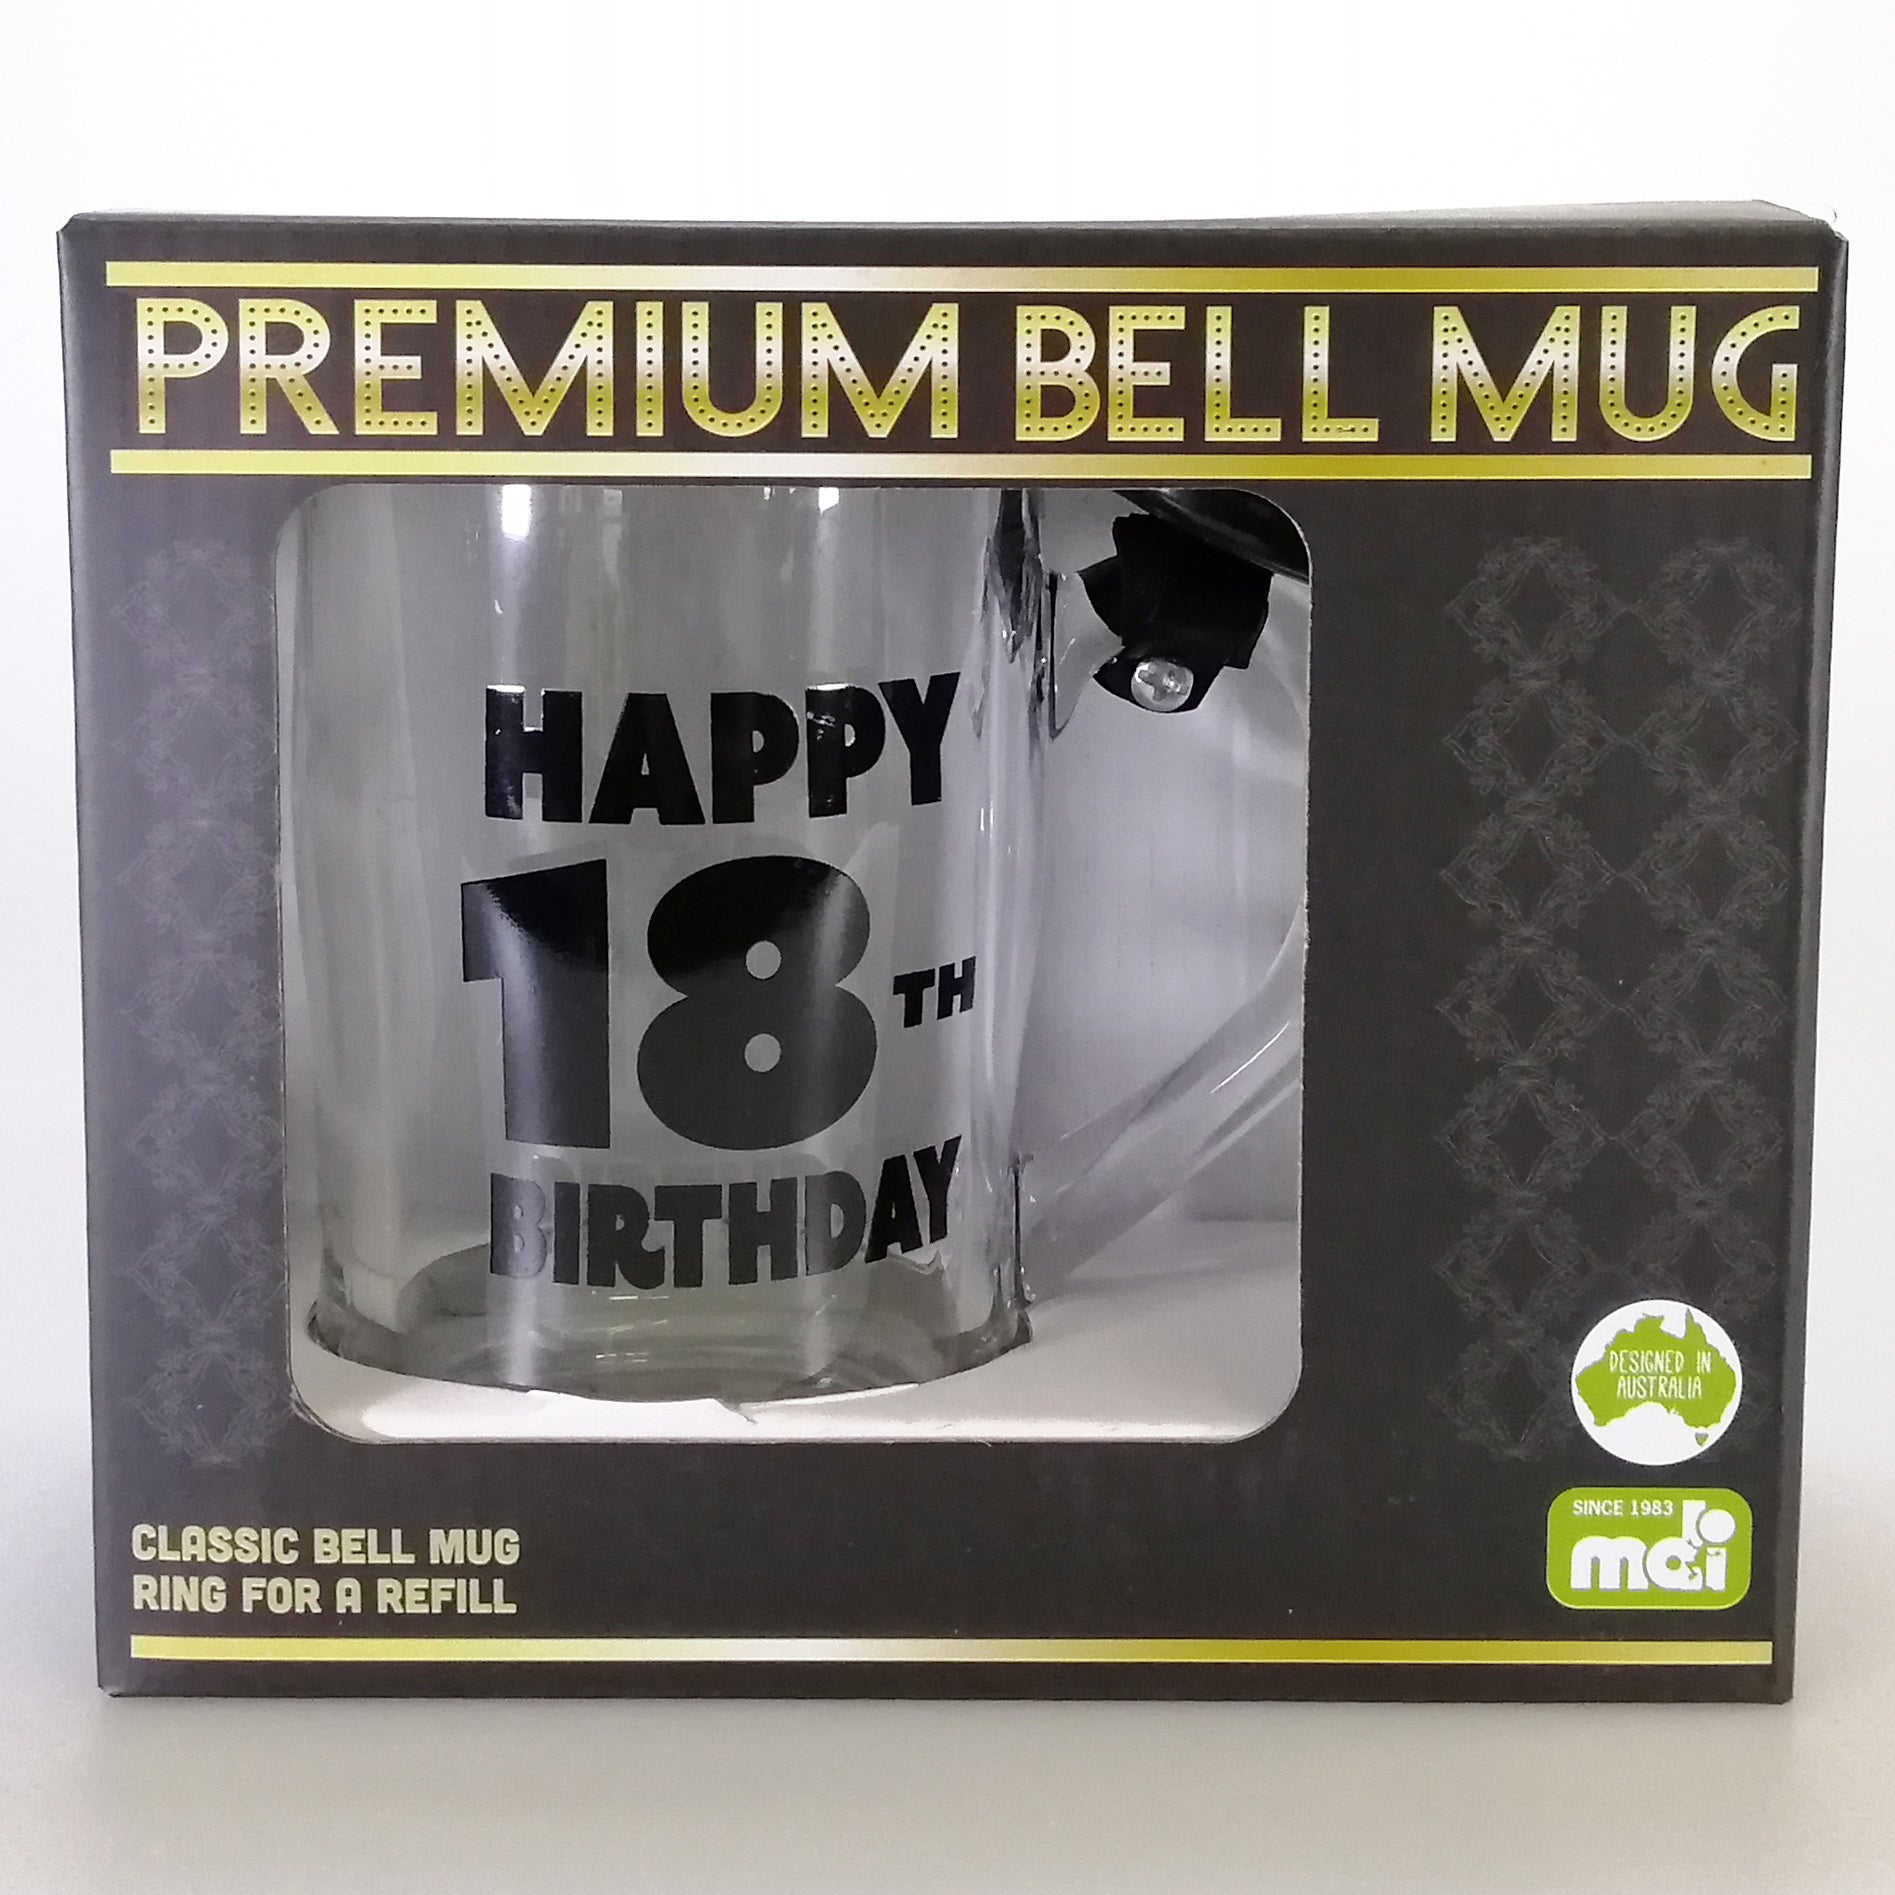 Premium 18th birthdays Stein with Bell